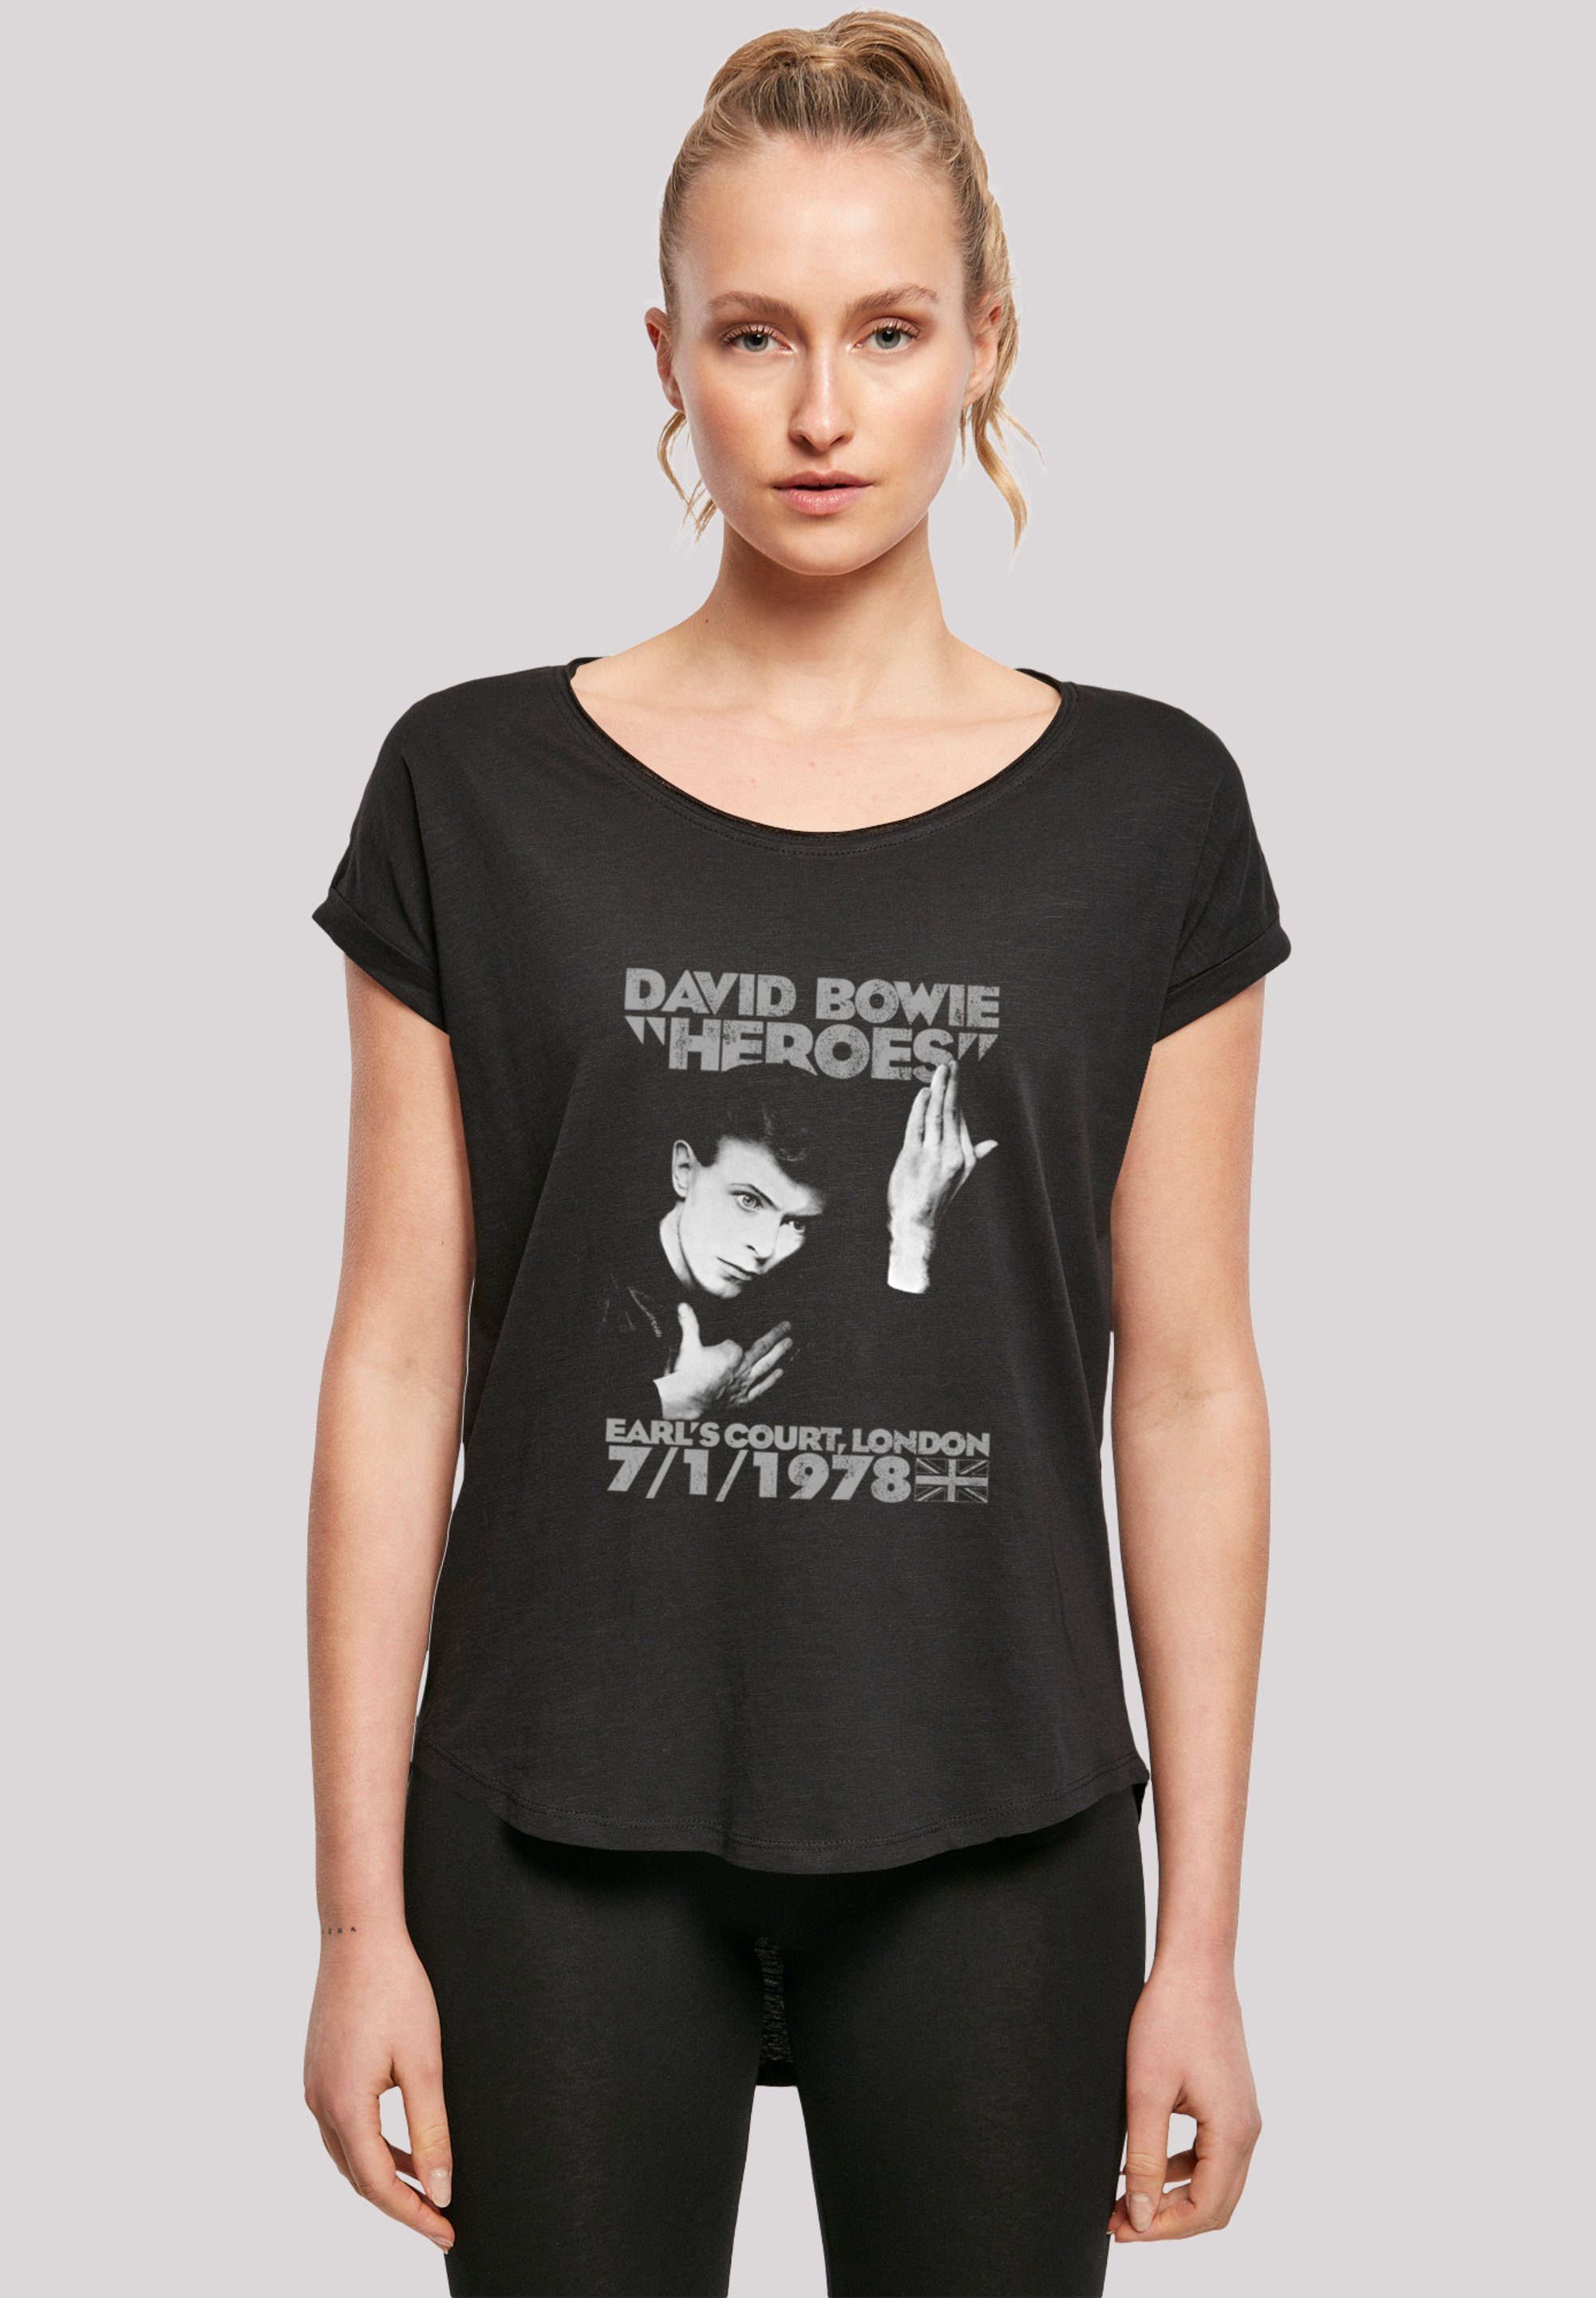 F4NT4STIC Court lang David extra Heroes T-Shirt T-Shirt Hinten geschnittenes Earls Damen Print, Bowie